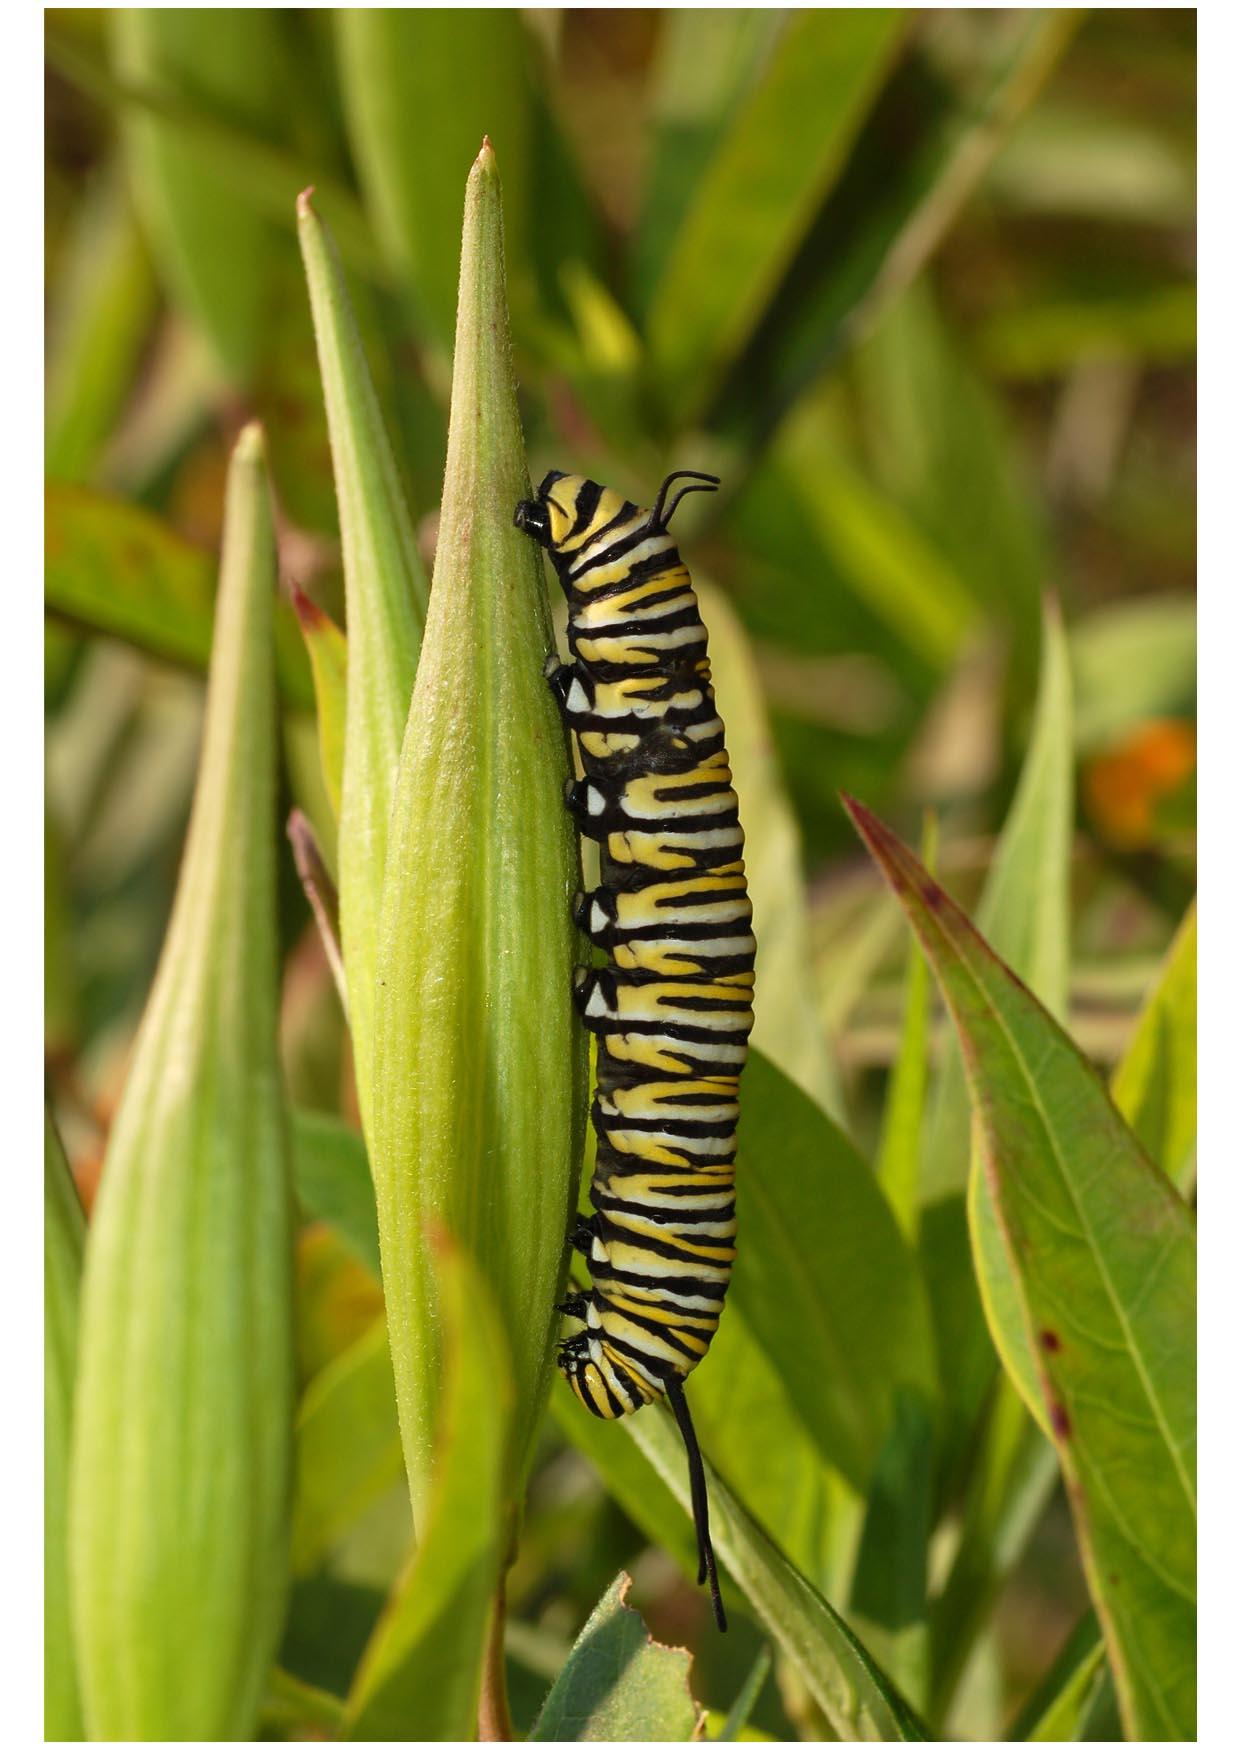 Photo caterpillar monarch butterfly